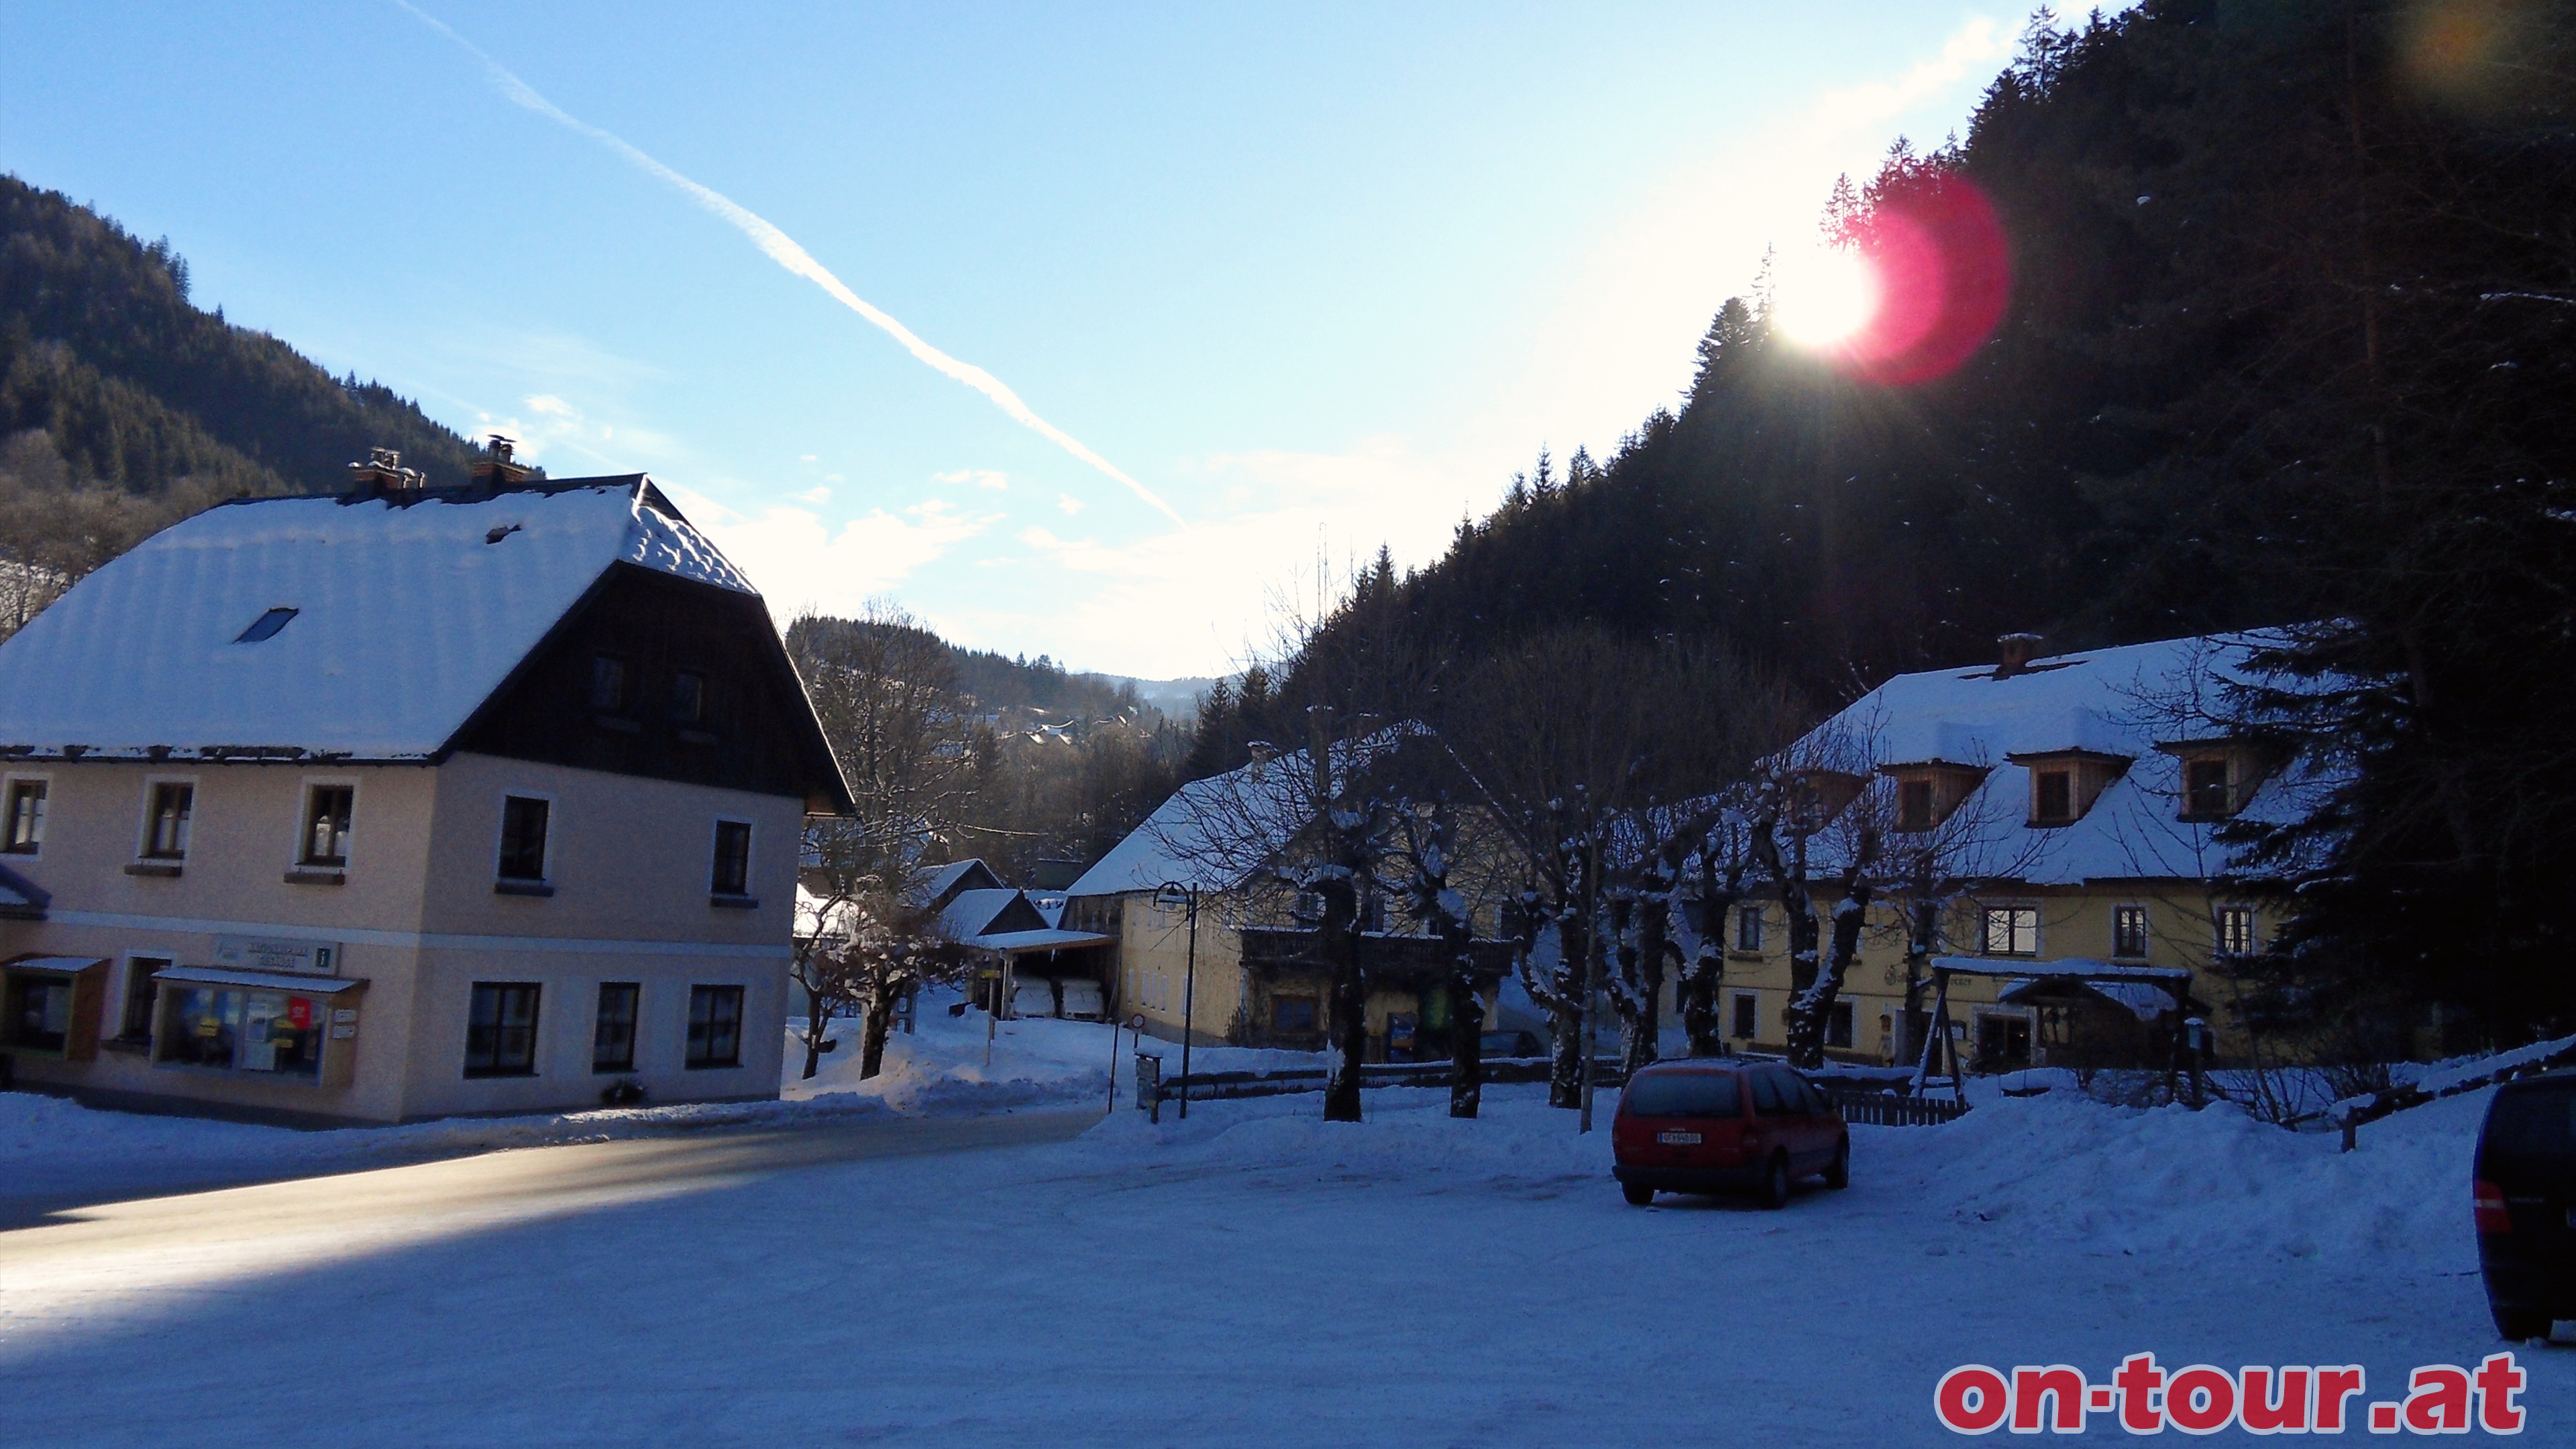 Ausgangspunkt ist der Parkplatz beim -Gasthof zum Donner- im Johnsbachtal. Wir folgen dem markierten Sommerweg Richtung -Mdlinger Htte-